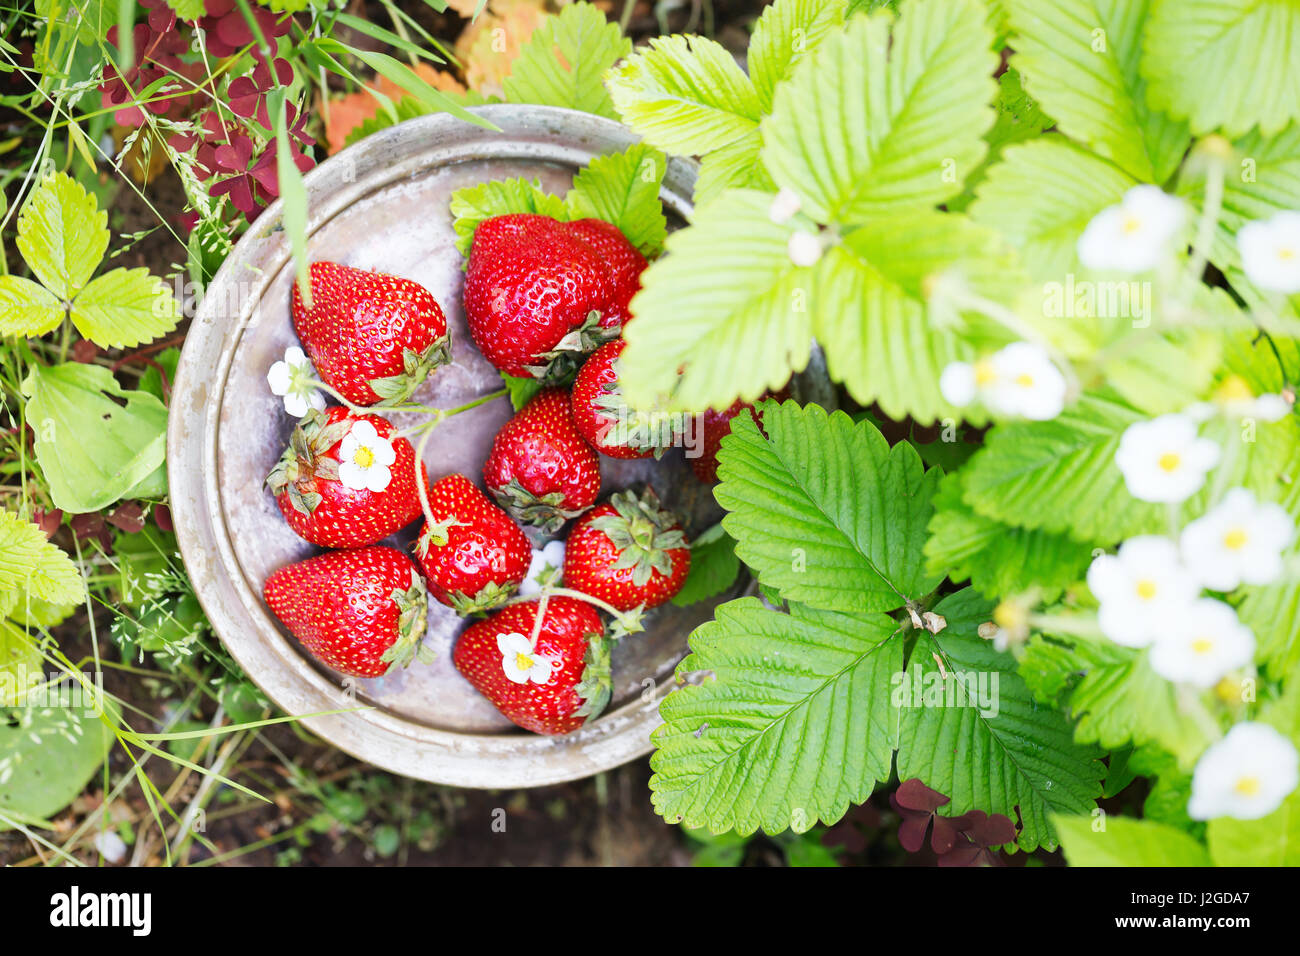 Perfekte süße reife Erdbeeren auf einem hölzernen Hintergrund Stockfoto